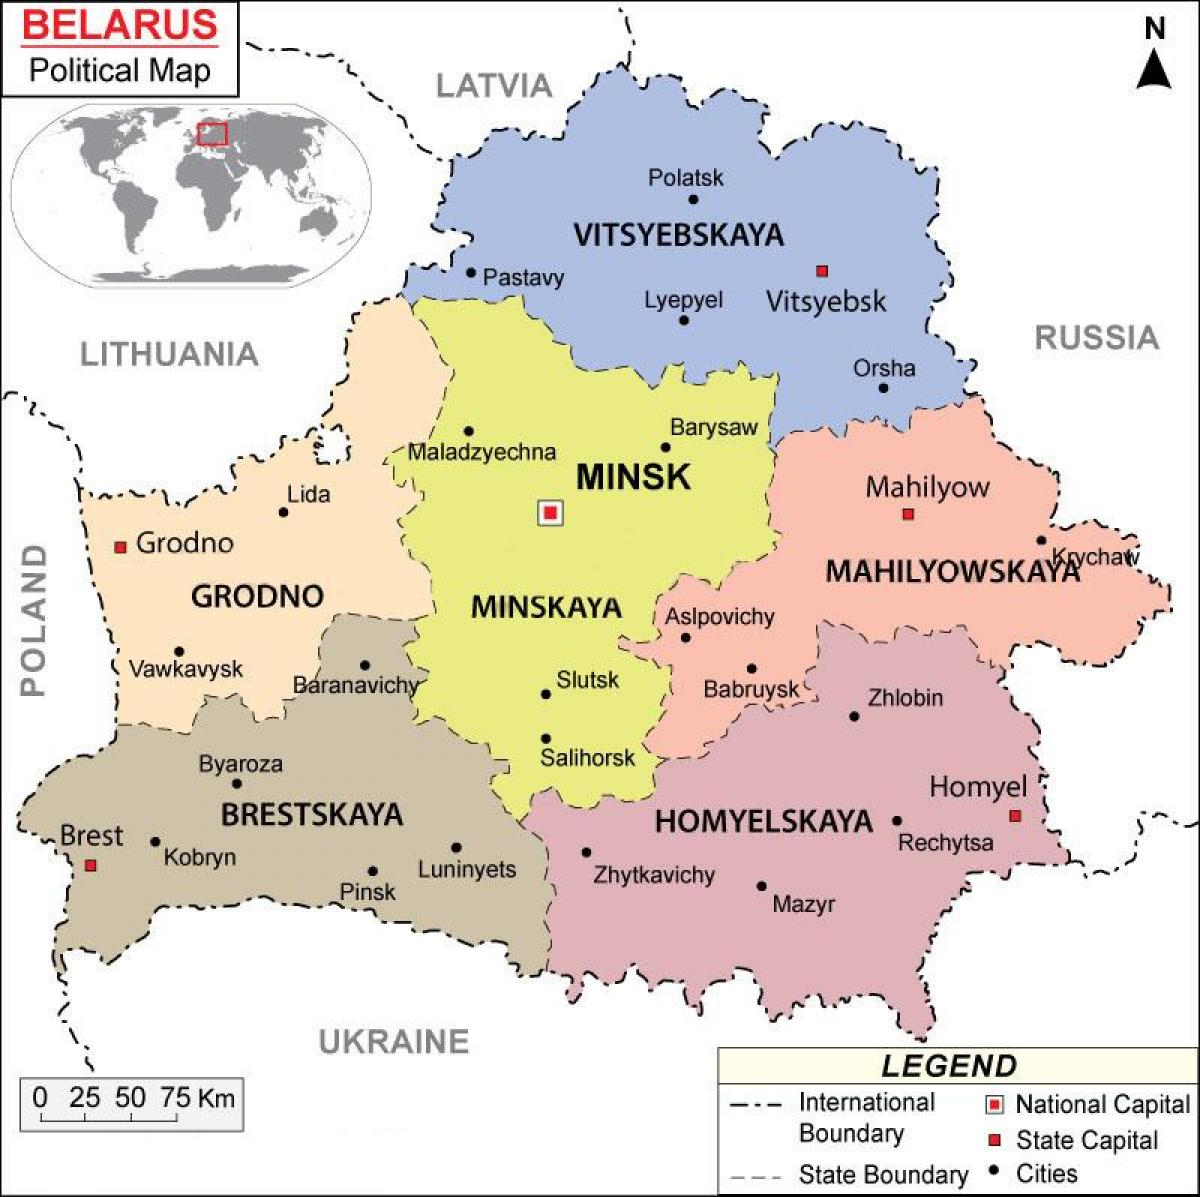 خريطة روسيا البيضاء السياسية